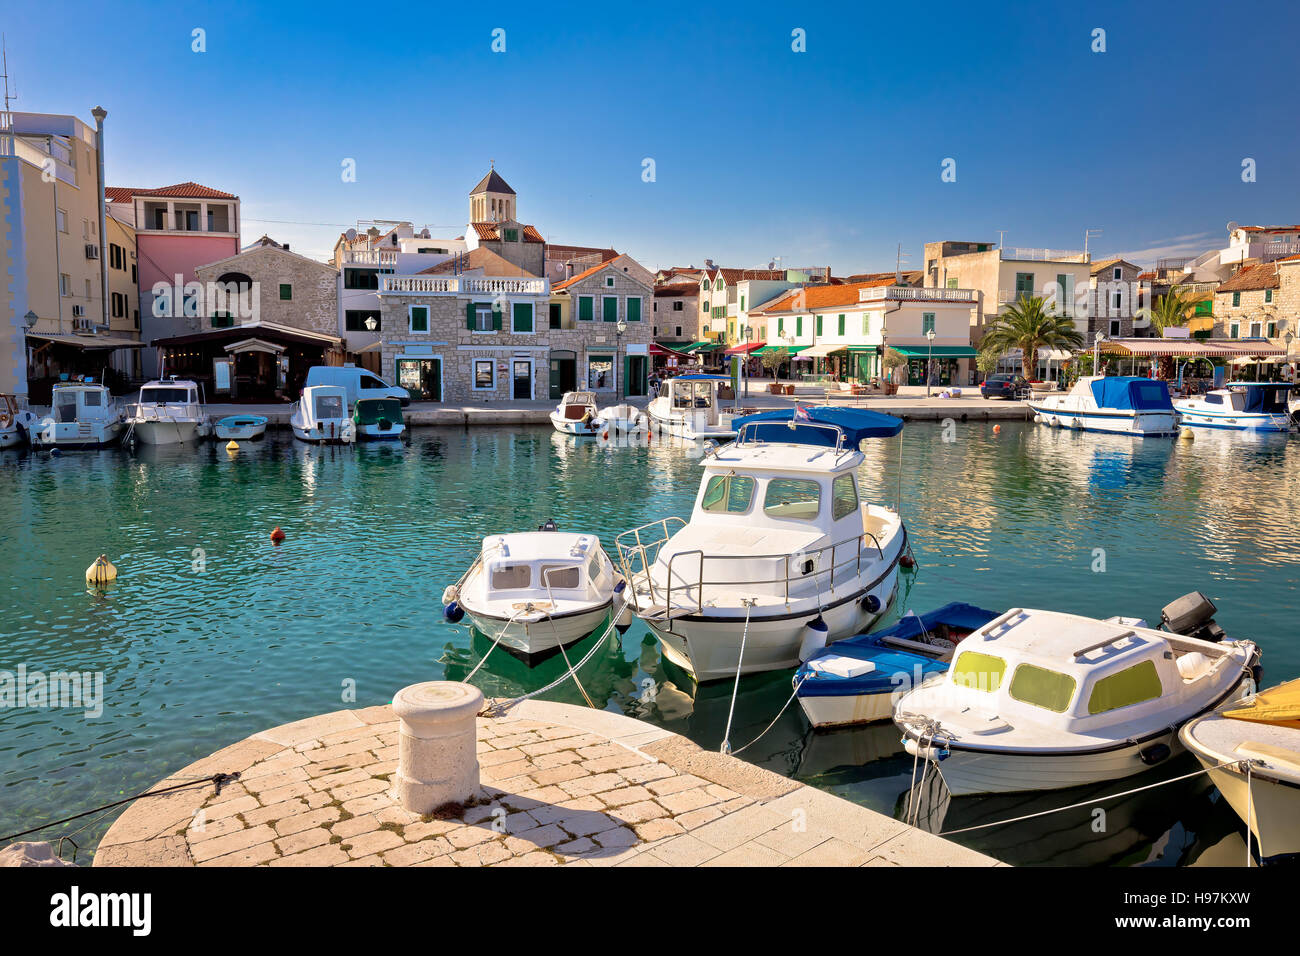 Town of Vodice tourist waterfront view, Dalmatia, Croatia Stock Photo